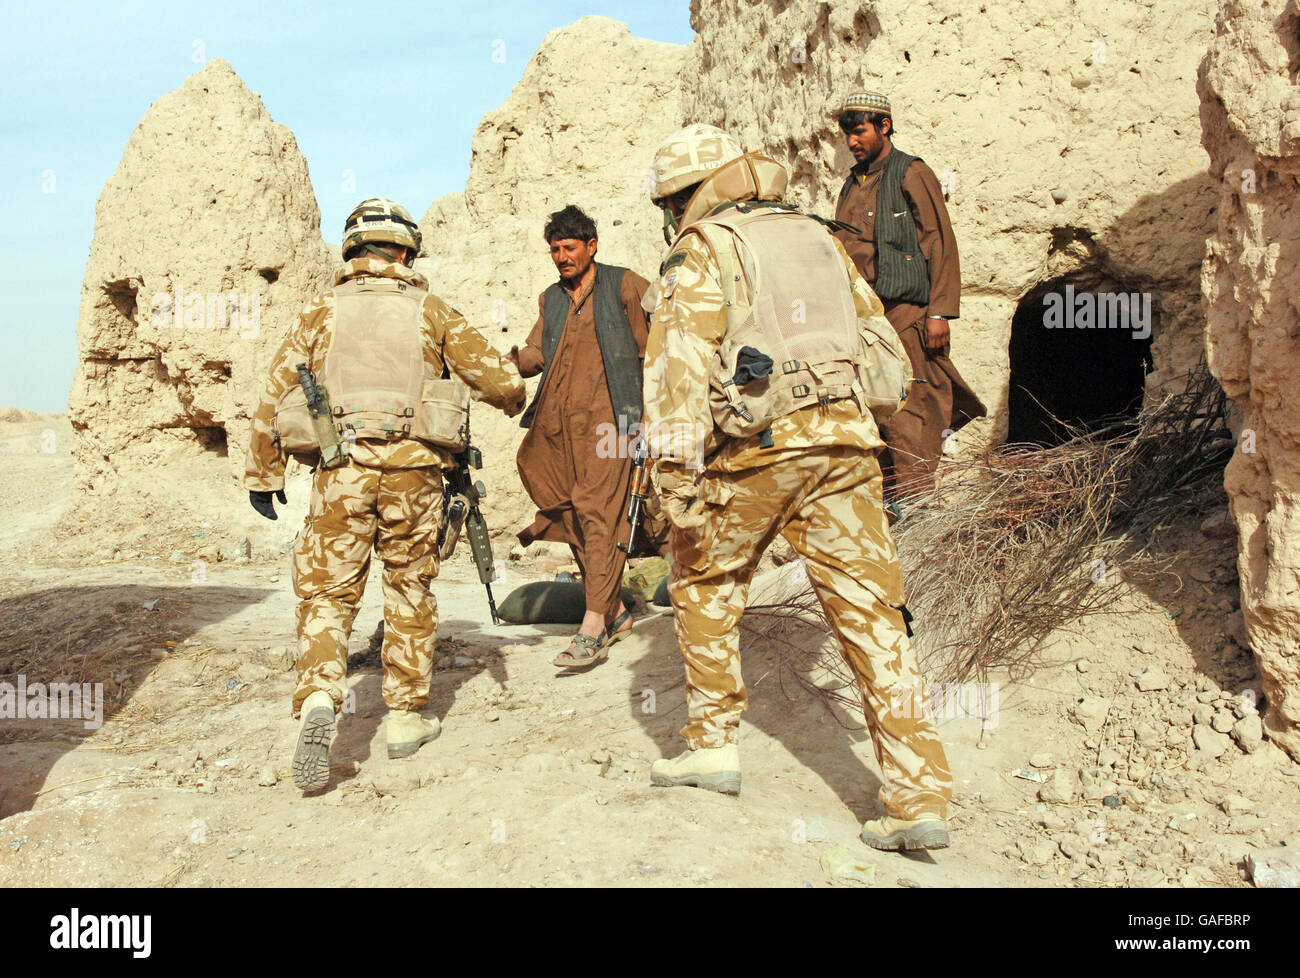 Les policiers locaux rencontrent le Royal Marine Commando près du village de Muktar, près de Lashkar Gah, dans la province de Helmand, en Afghanistan, en tant que patrouille du Royal Marine Commando dans la province. Banque D'Images